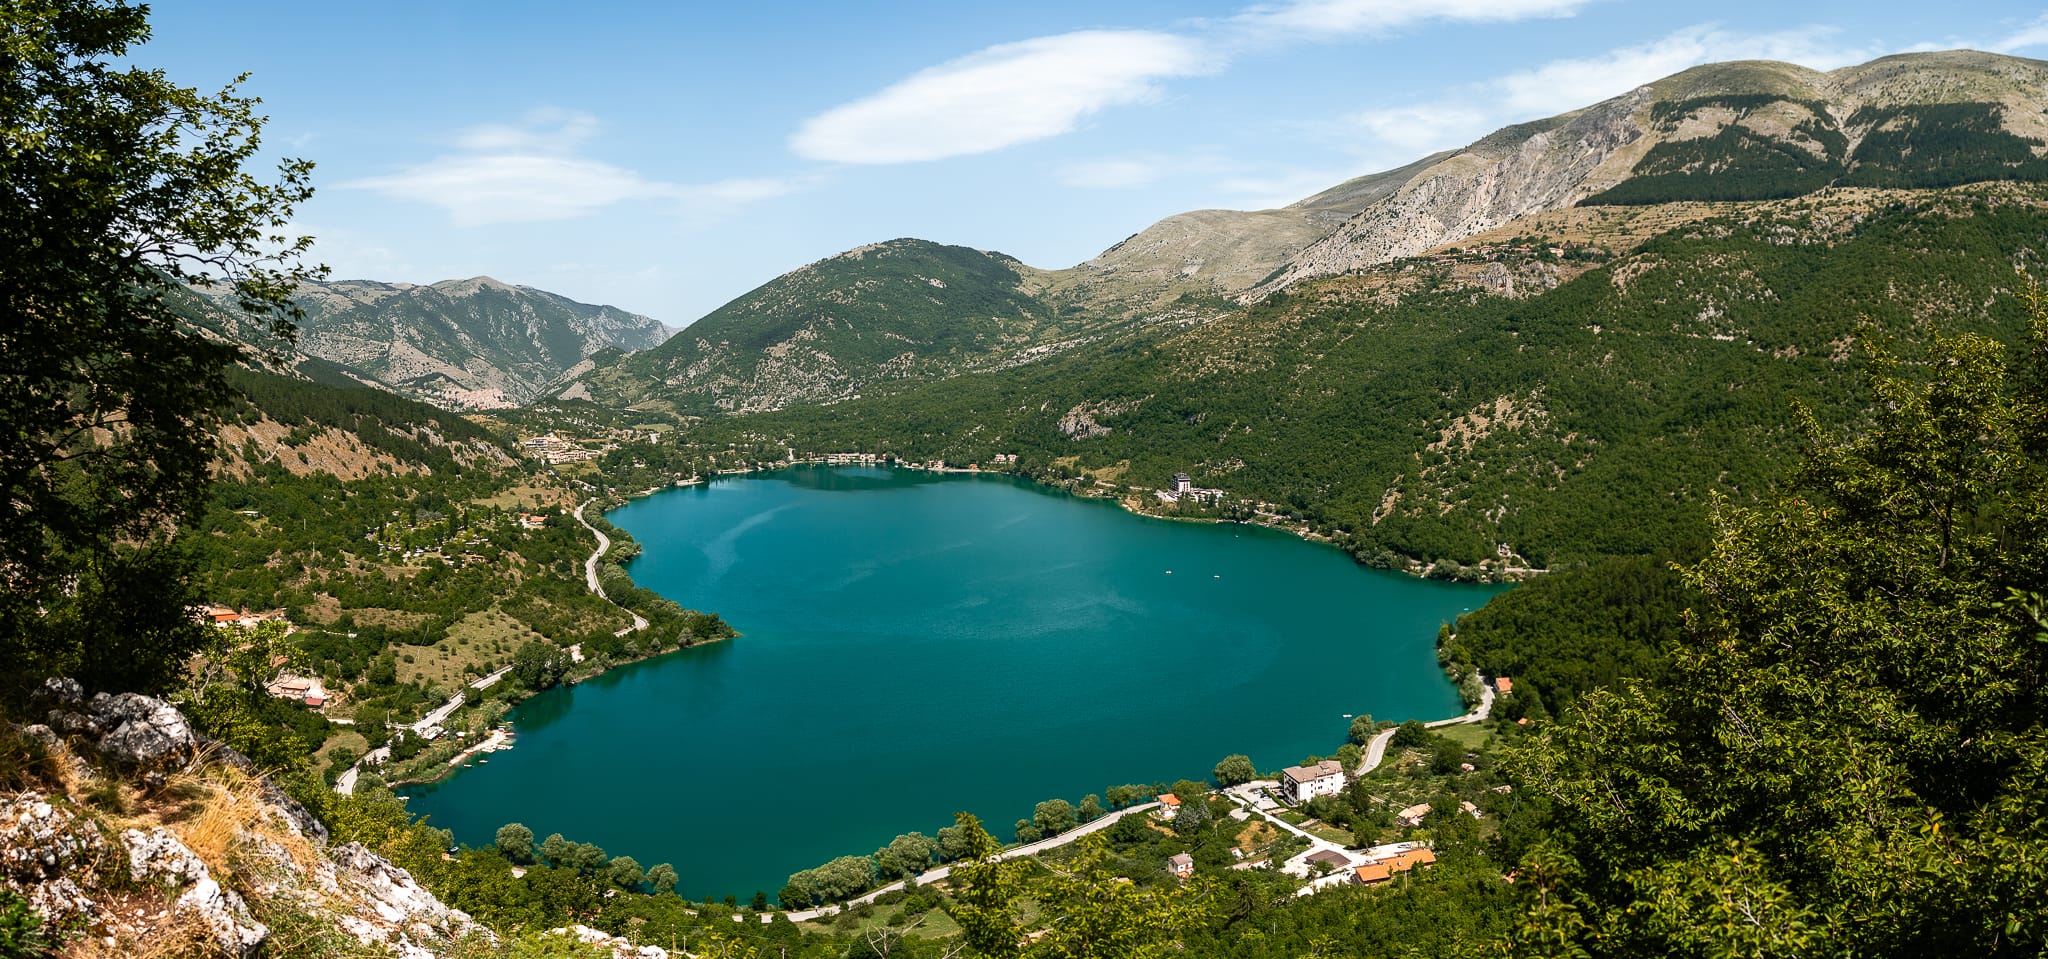 Tania Matteo Prematrimoniale Abruzzo Lago di Scanno Sulmona vista lago a forma di cuore